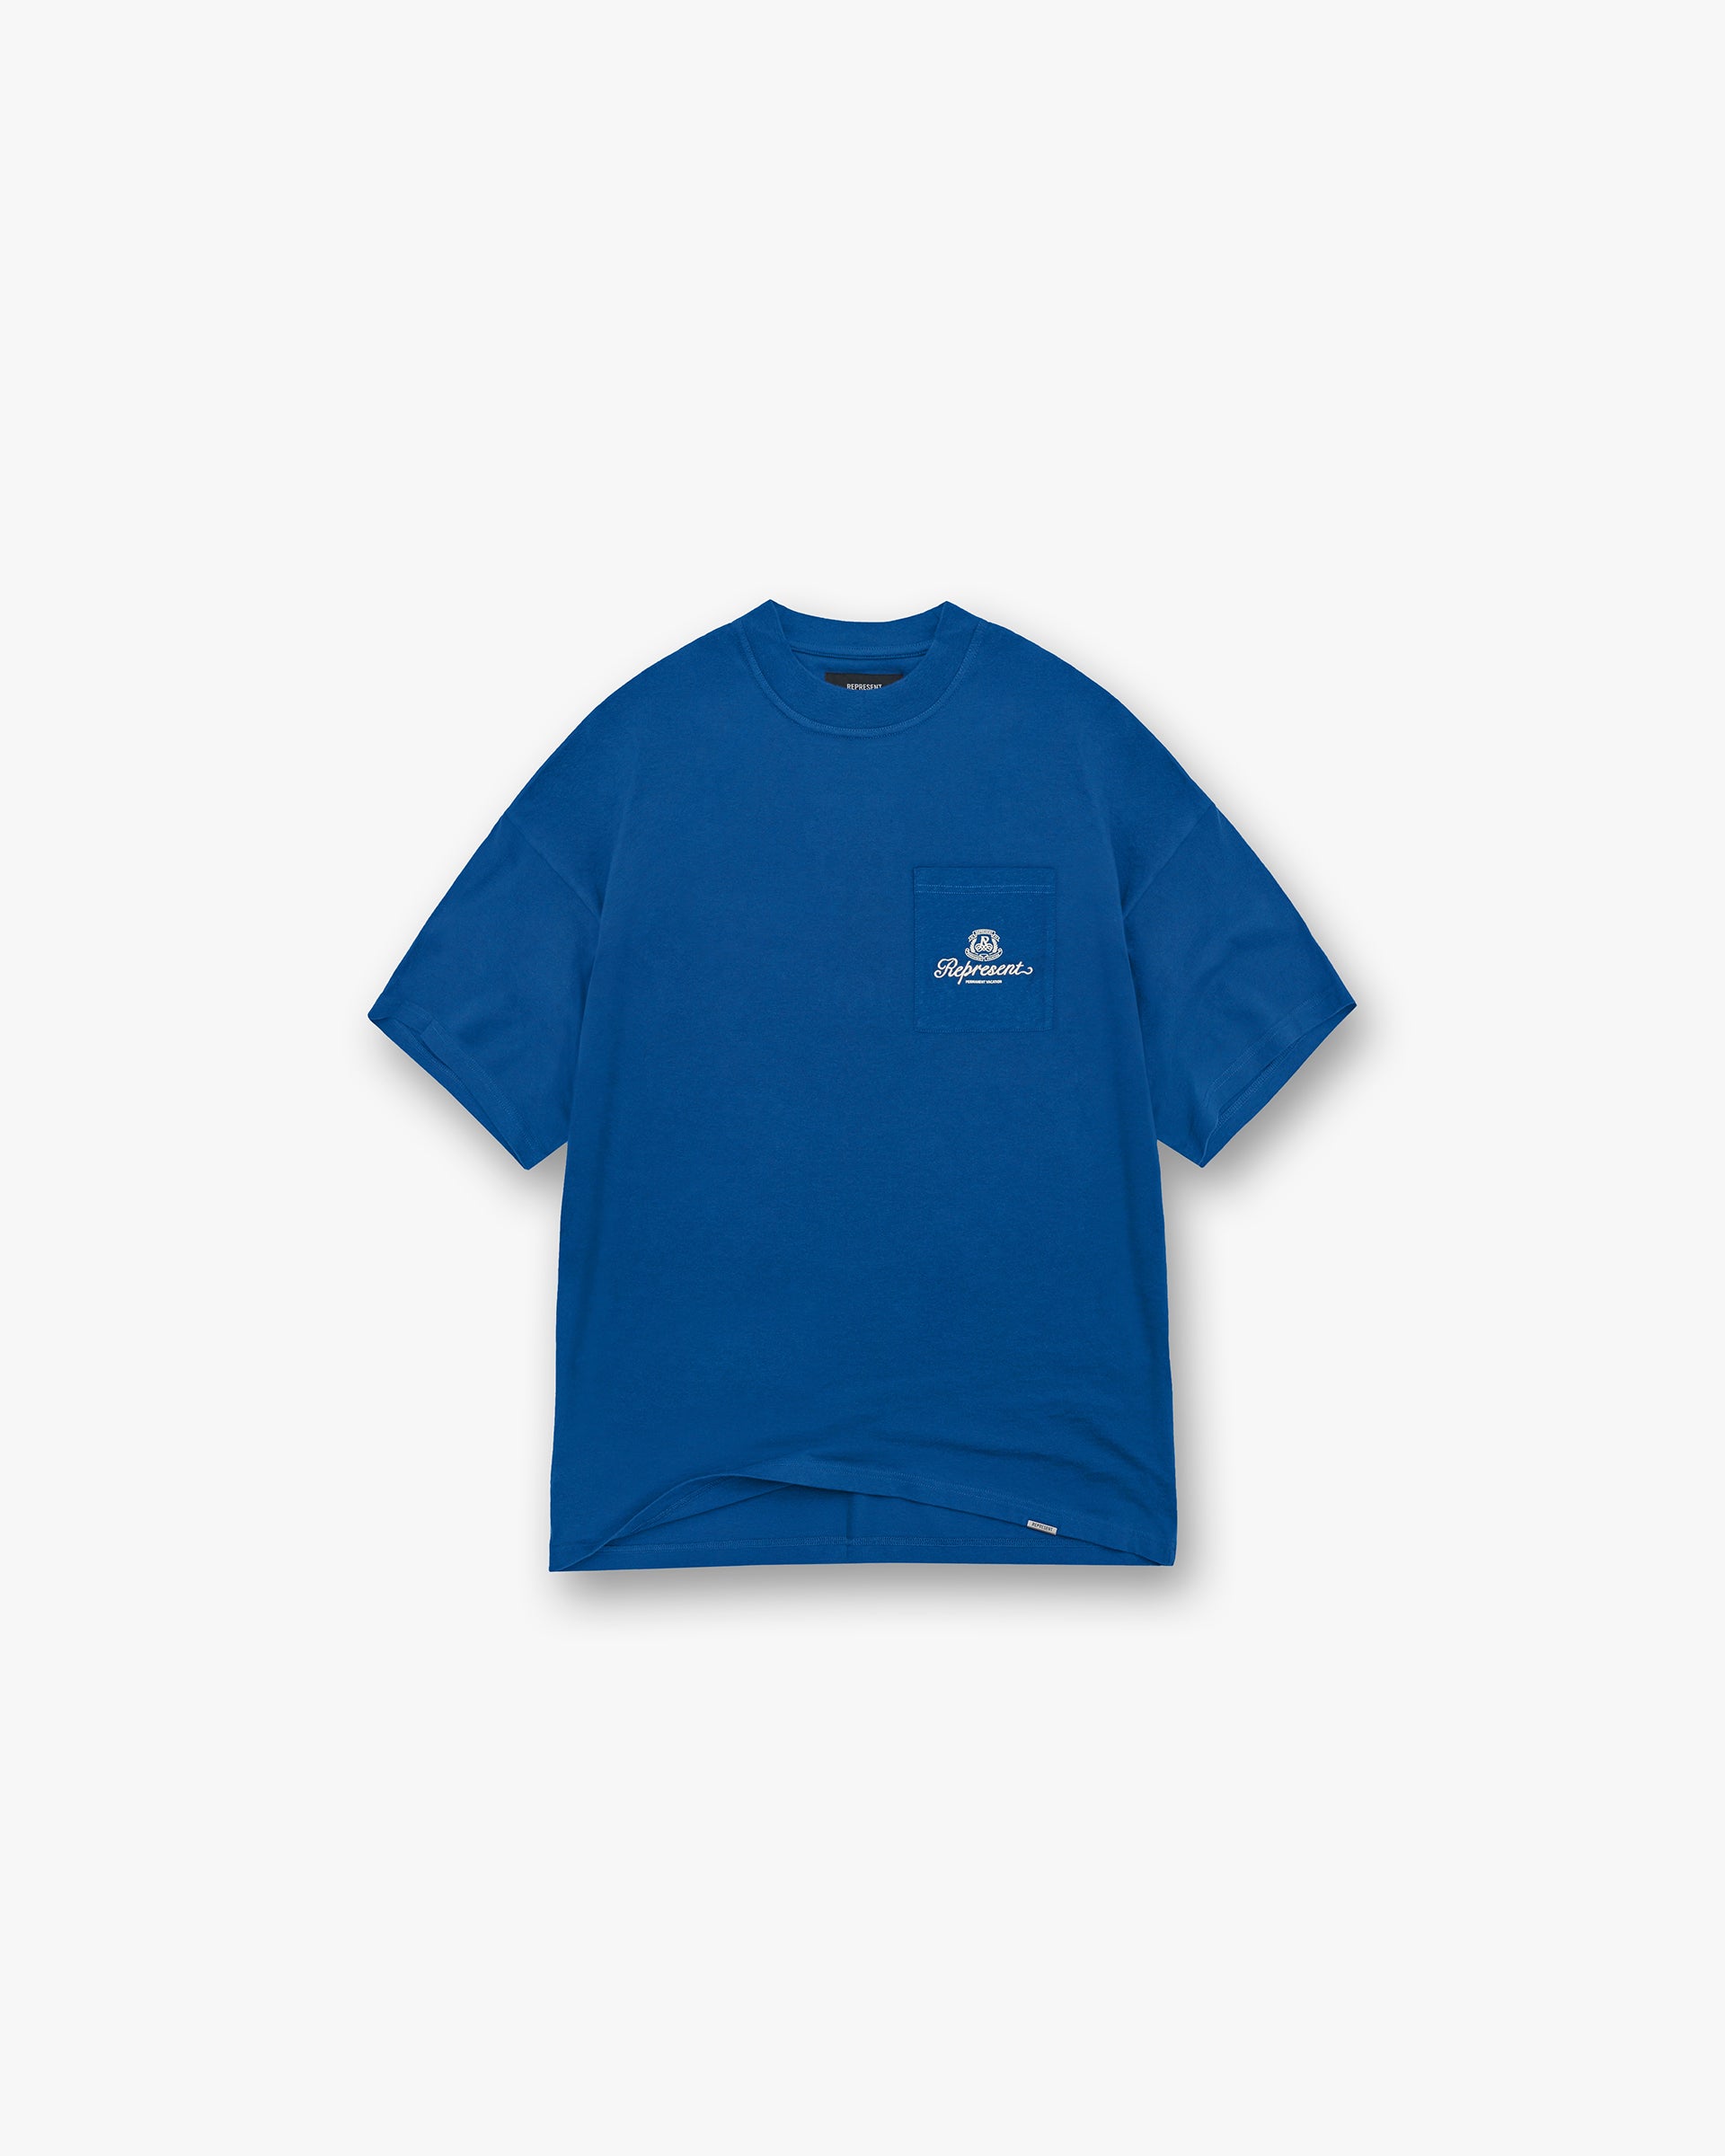 Permanent Vacation Pocket T-Shirt - Royal Blue